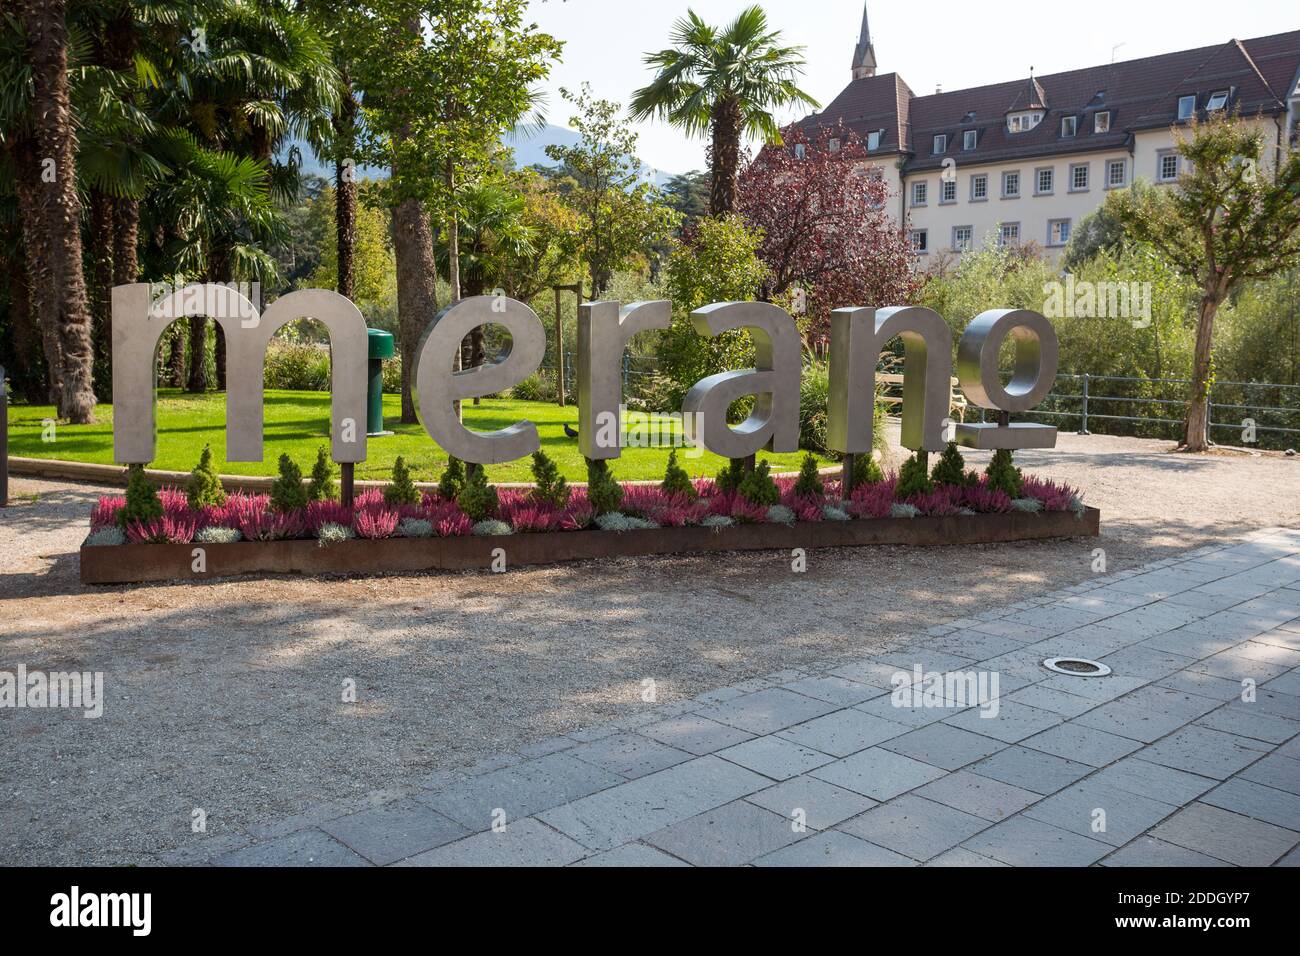 MERAN, ITALIEN, 13. SEPTEMBER 2020 - die Inschrift "Merano" in der Stadt Meran, Provinz Bozen, Südtirol, Italien. Stockfoto